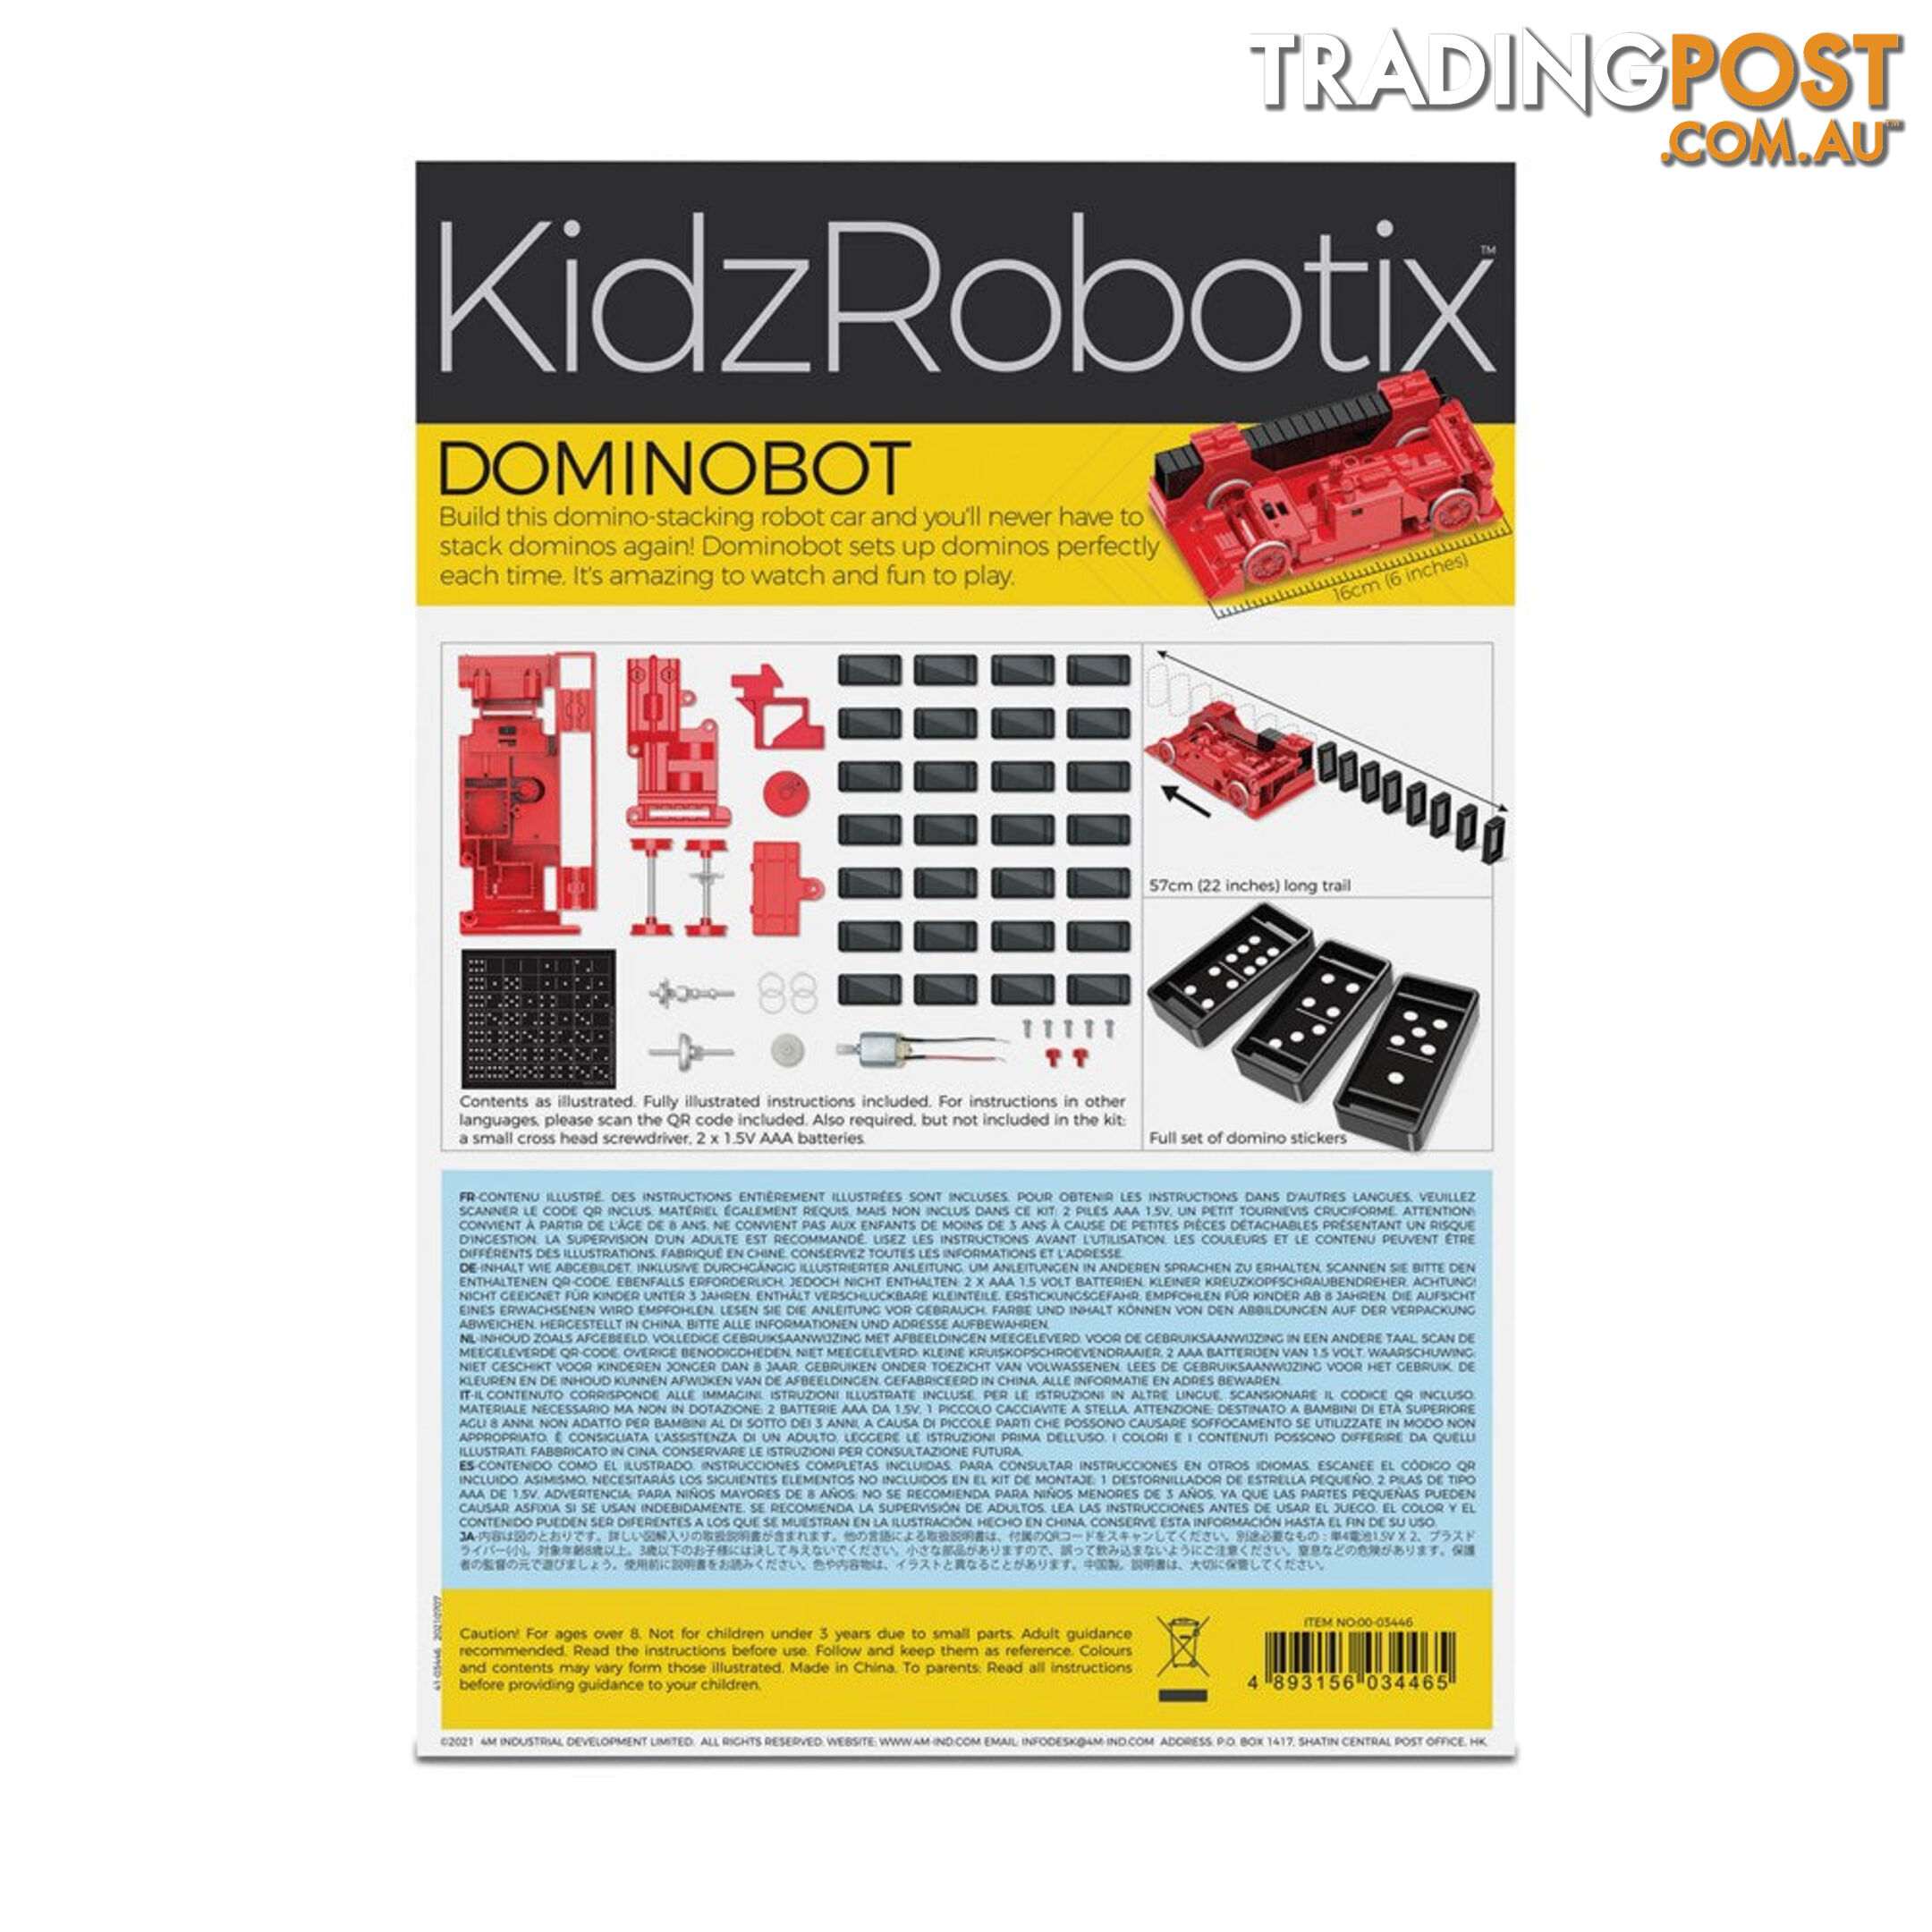 4m - Kidzrobotix - Dominobot Jpfsg3446 - 4893156034465